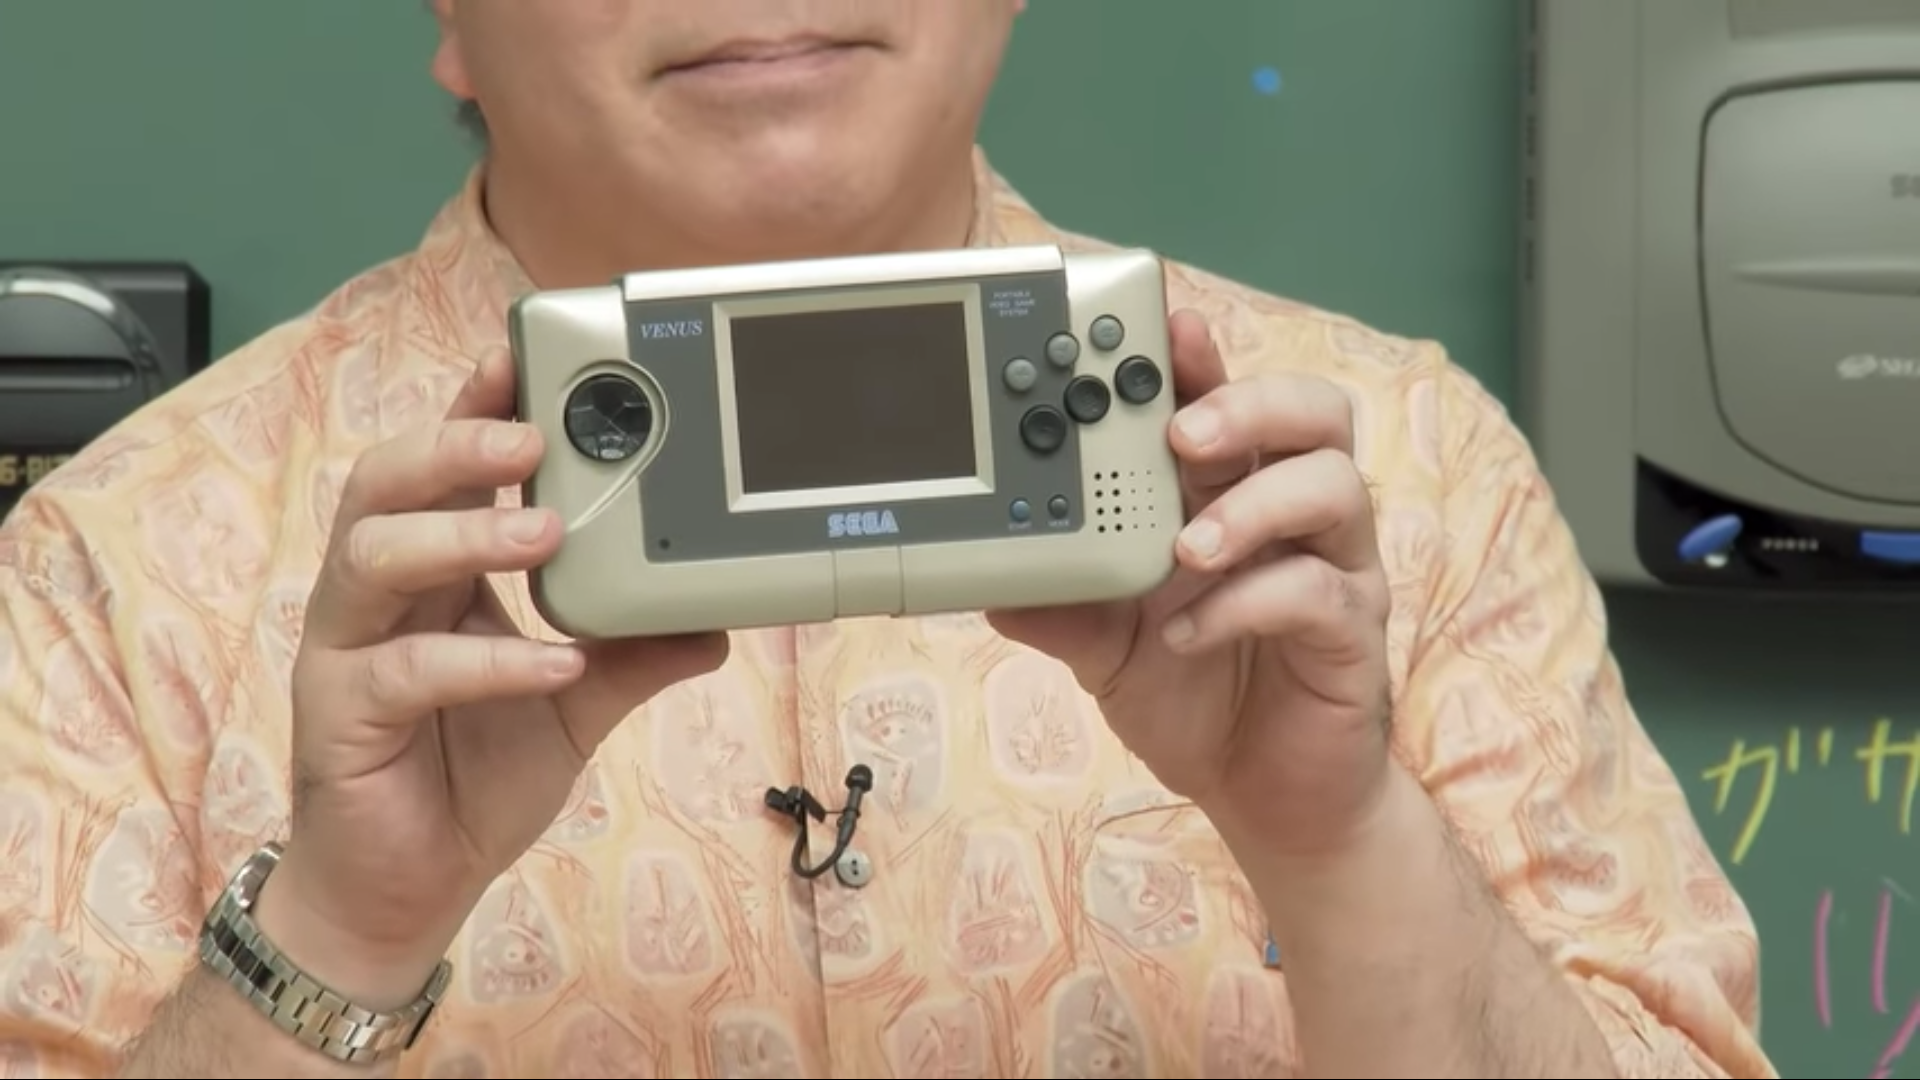 Close up of Hiroyuki Miyazaki’s hands holding the Sega Venus handheld prototype